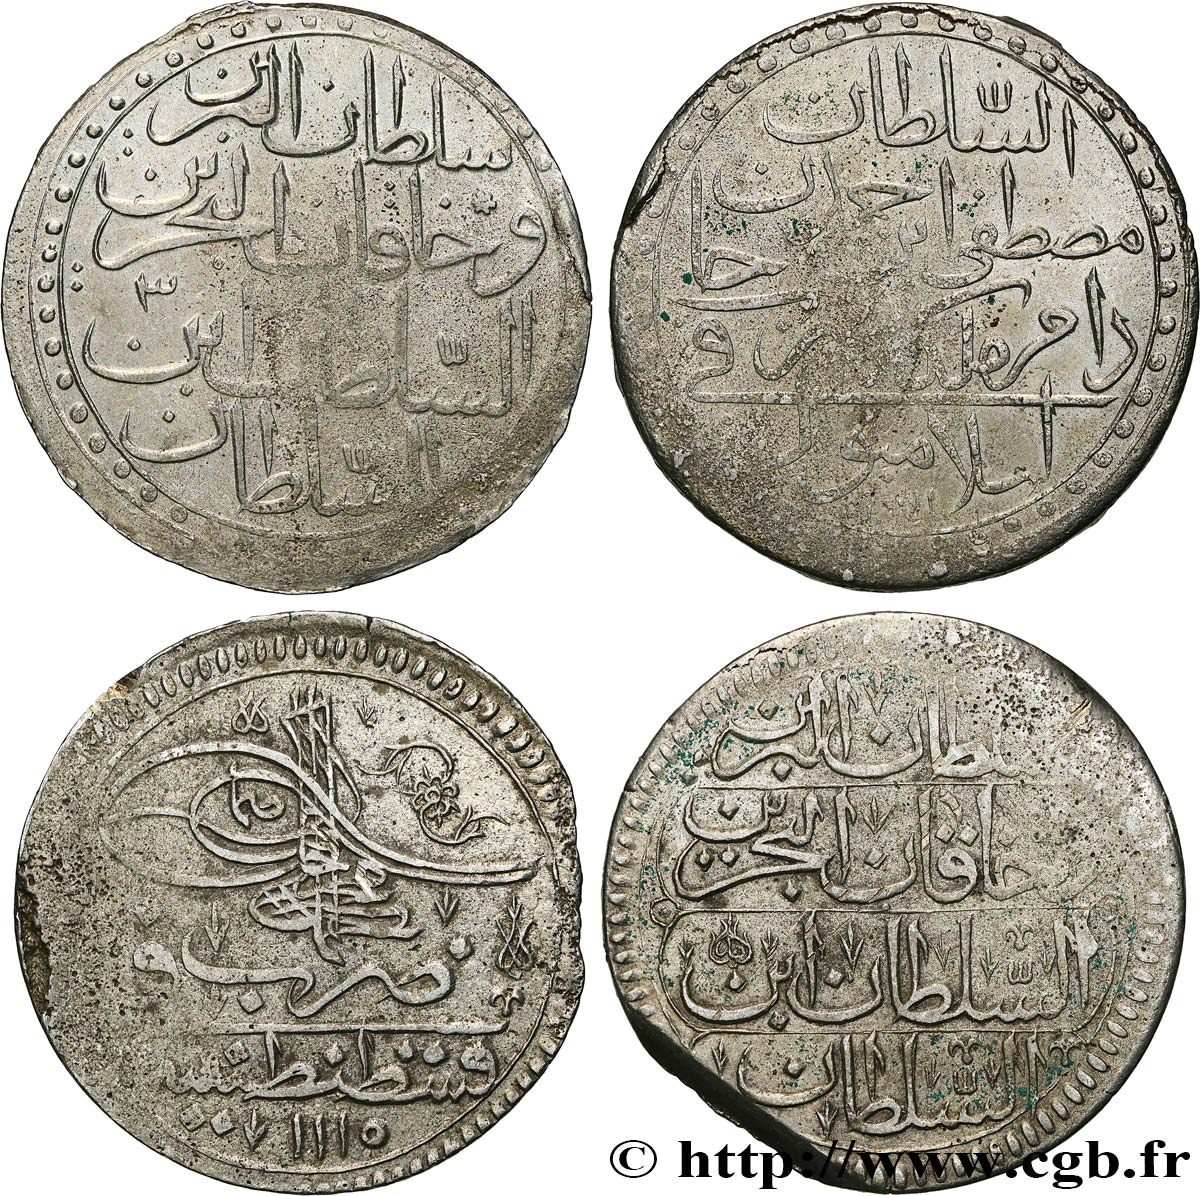 LOTES Lot de deux monnaies ottomanes n.d.  MBC 